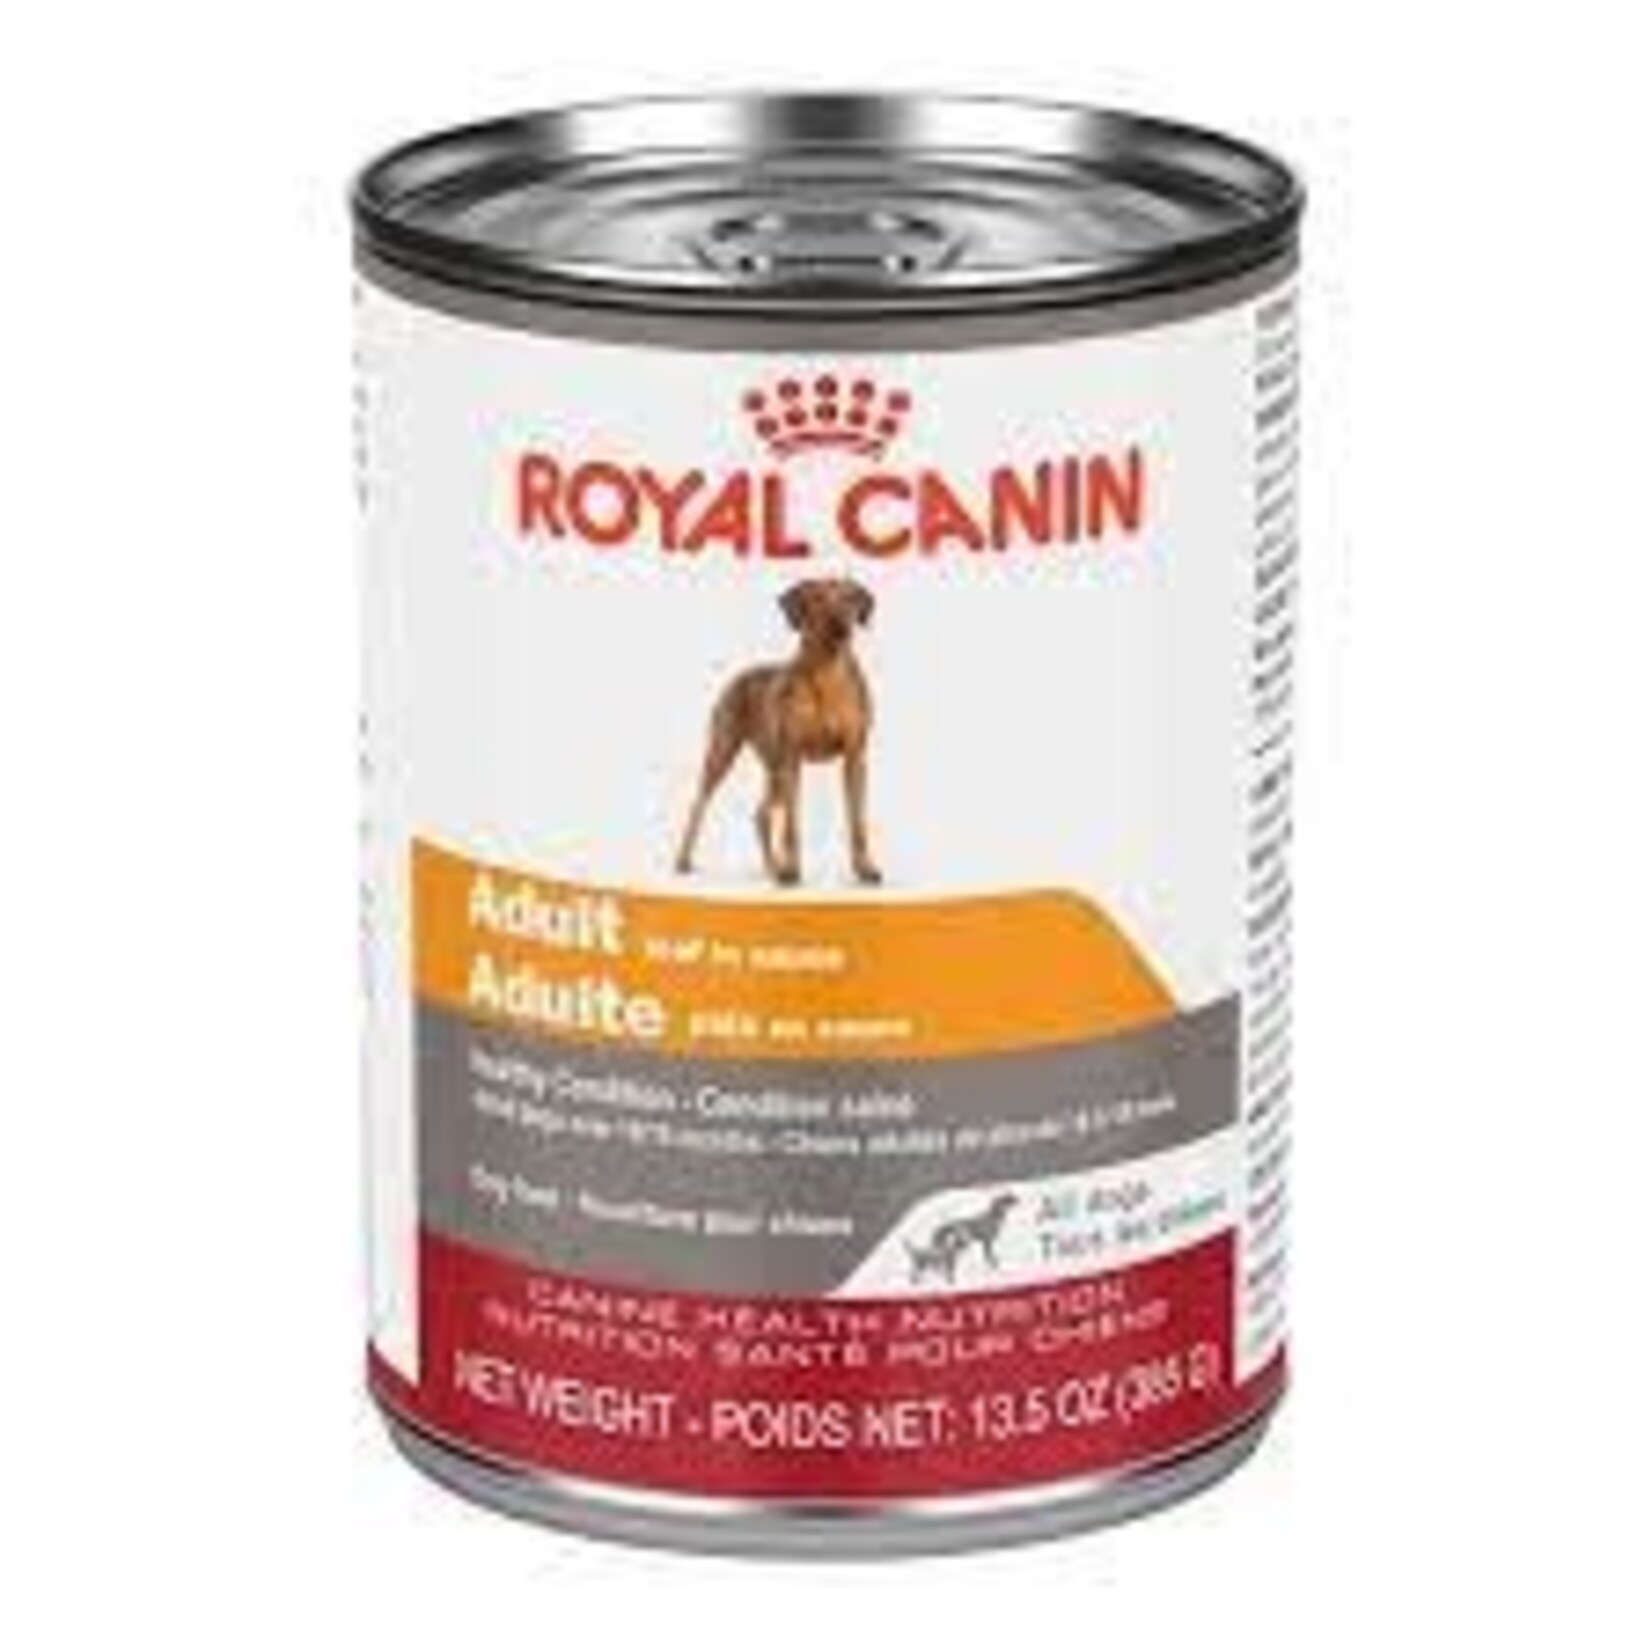 Royal Canin Royal Canin Pâté Toutes Races Adulte 13.5 OZ/385 G